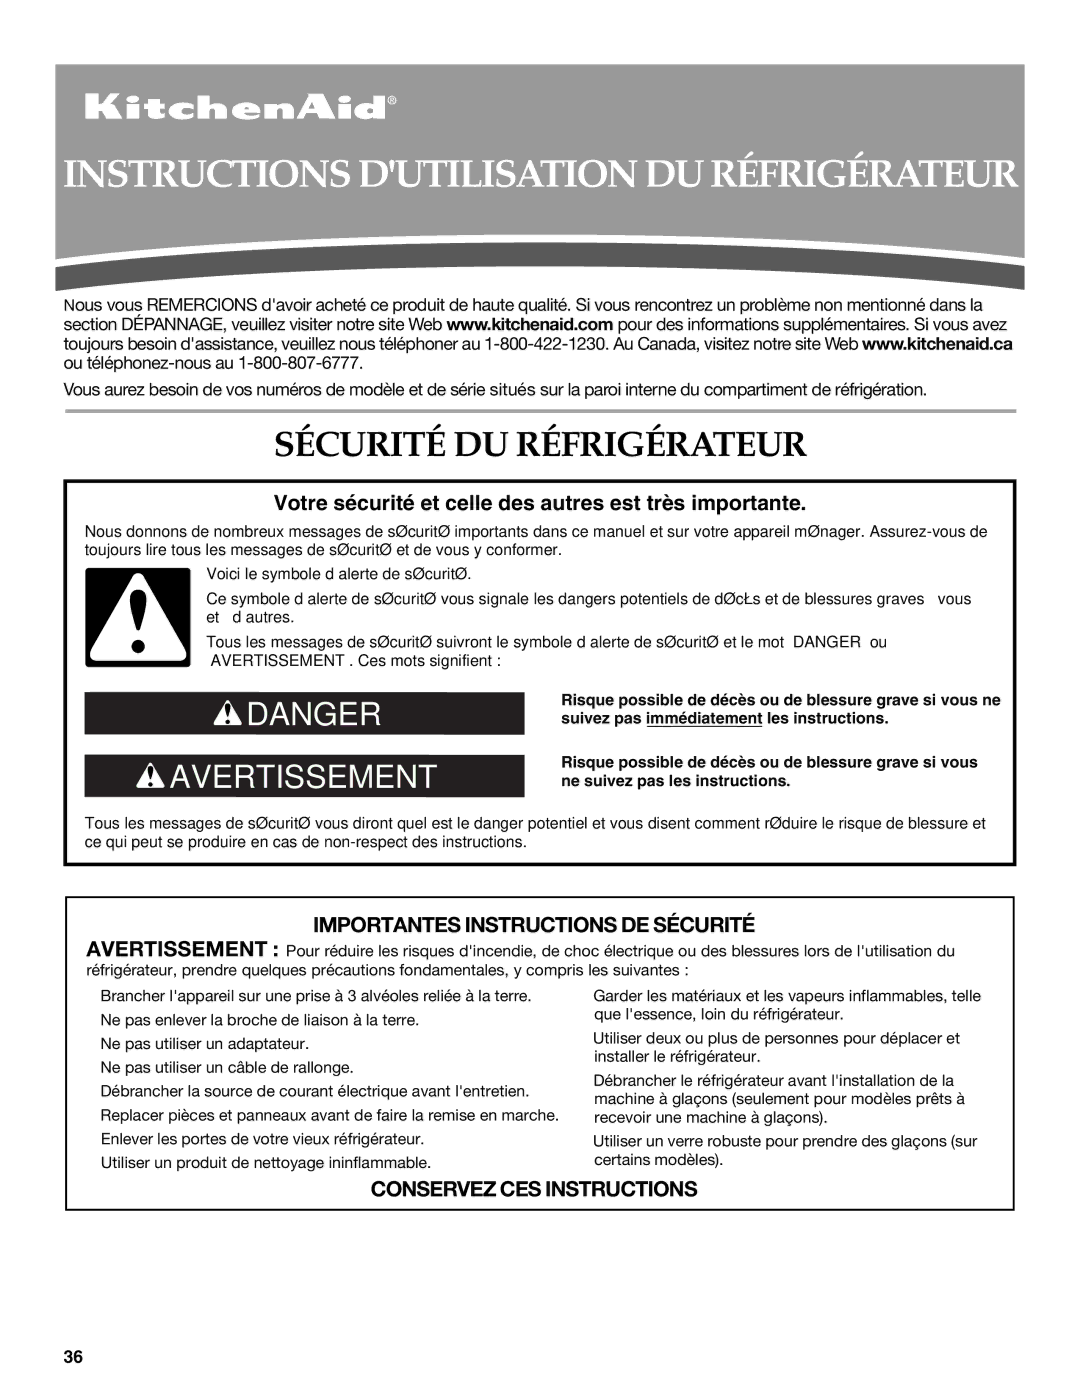 KitchenAid KFIS20XVBL installation instructions Instructions Dutilisation DU Réfrigérateur, Sécurité DU Réfrigérateur 